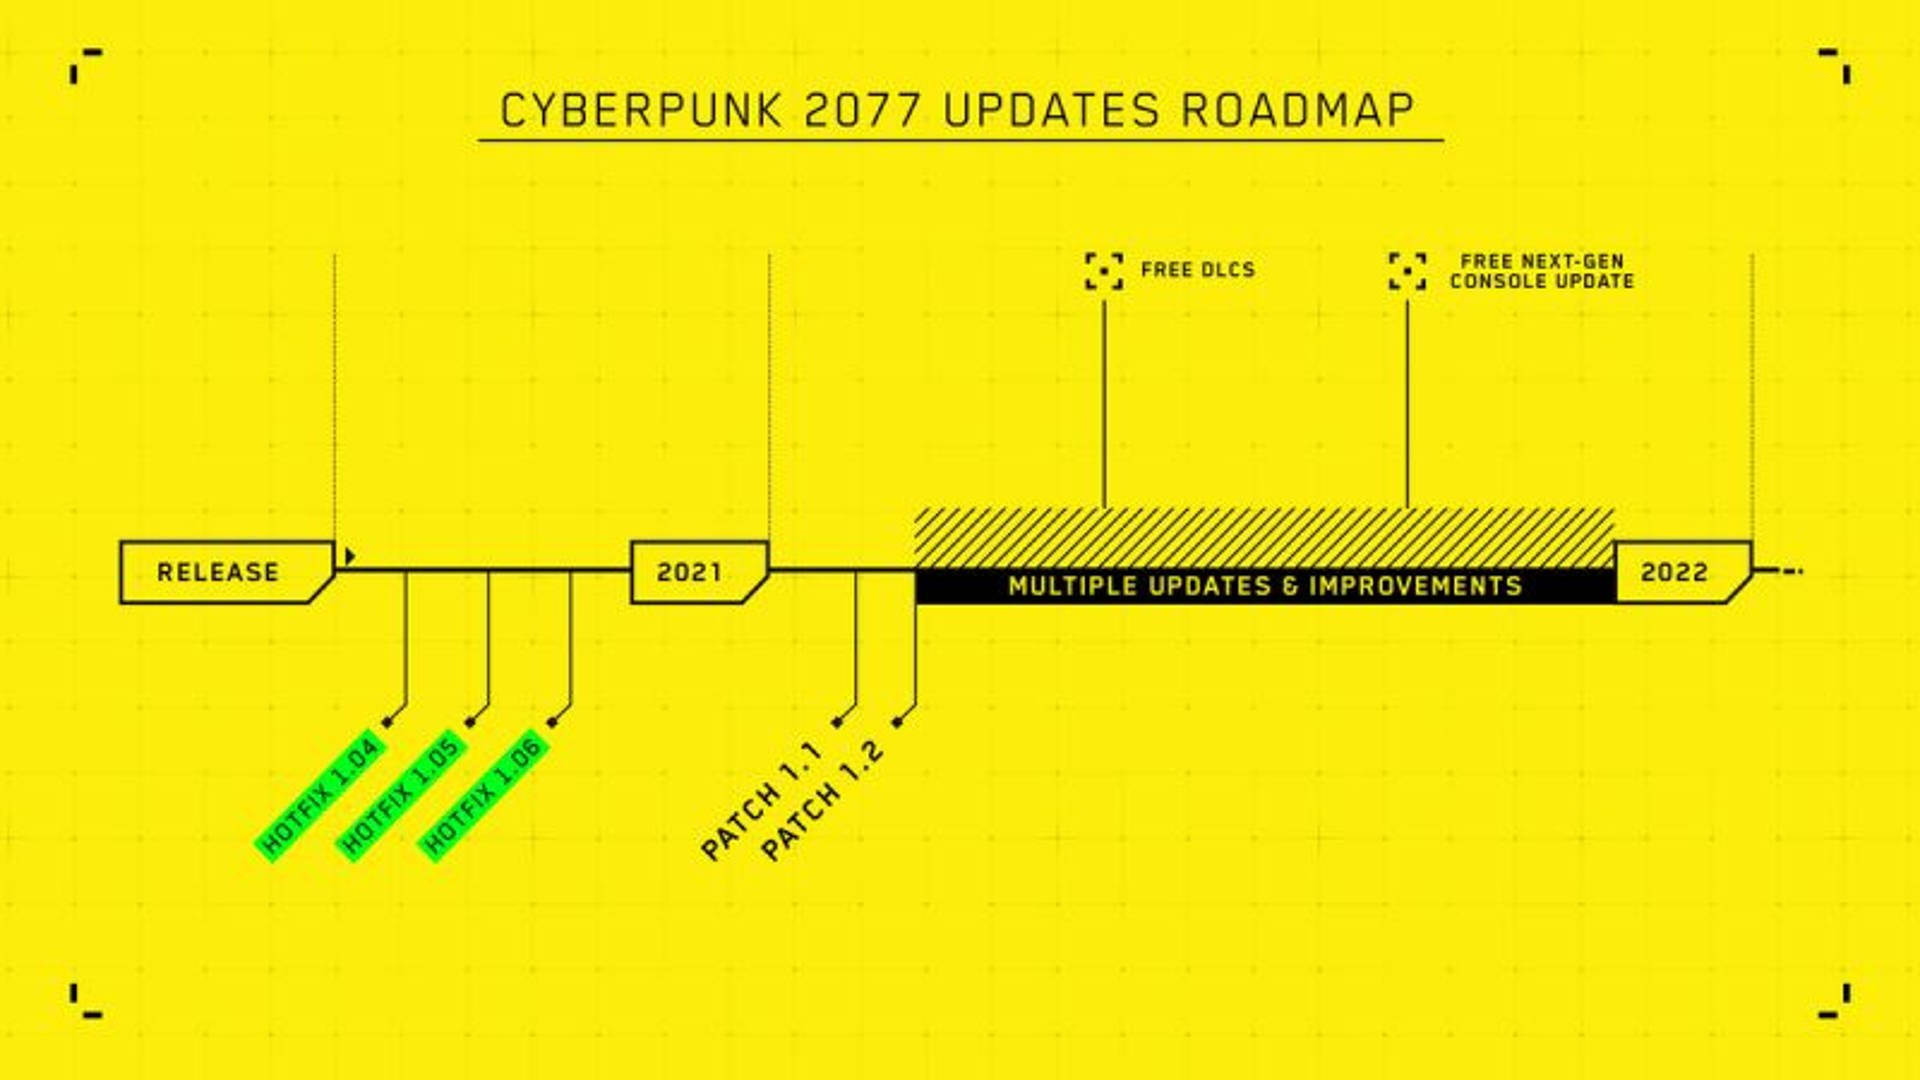 Cyberpunk 2077 roadmap 2021